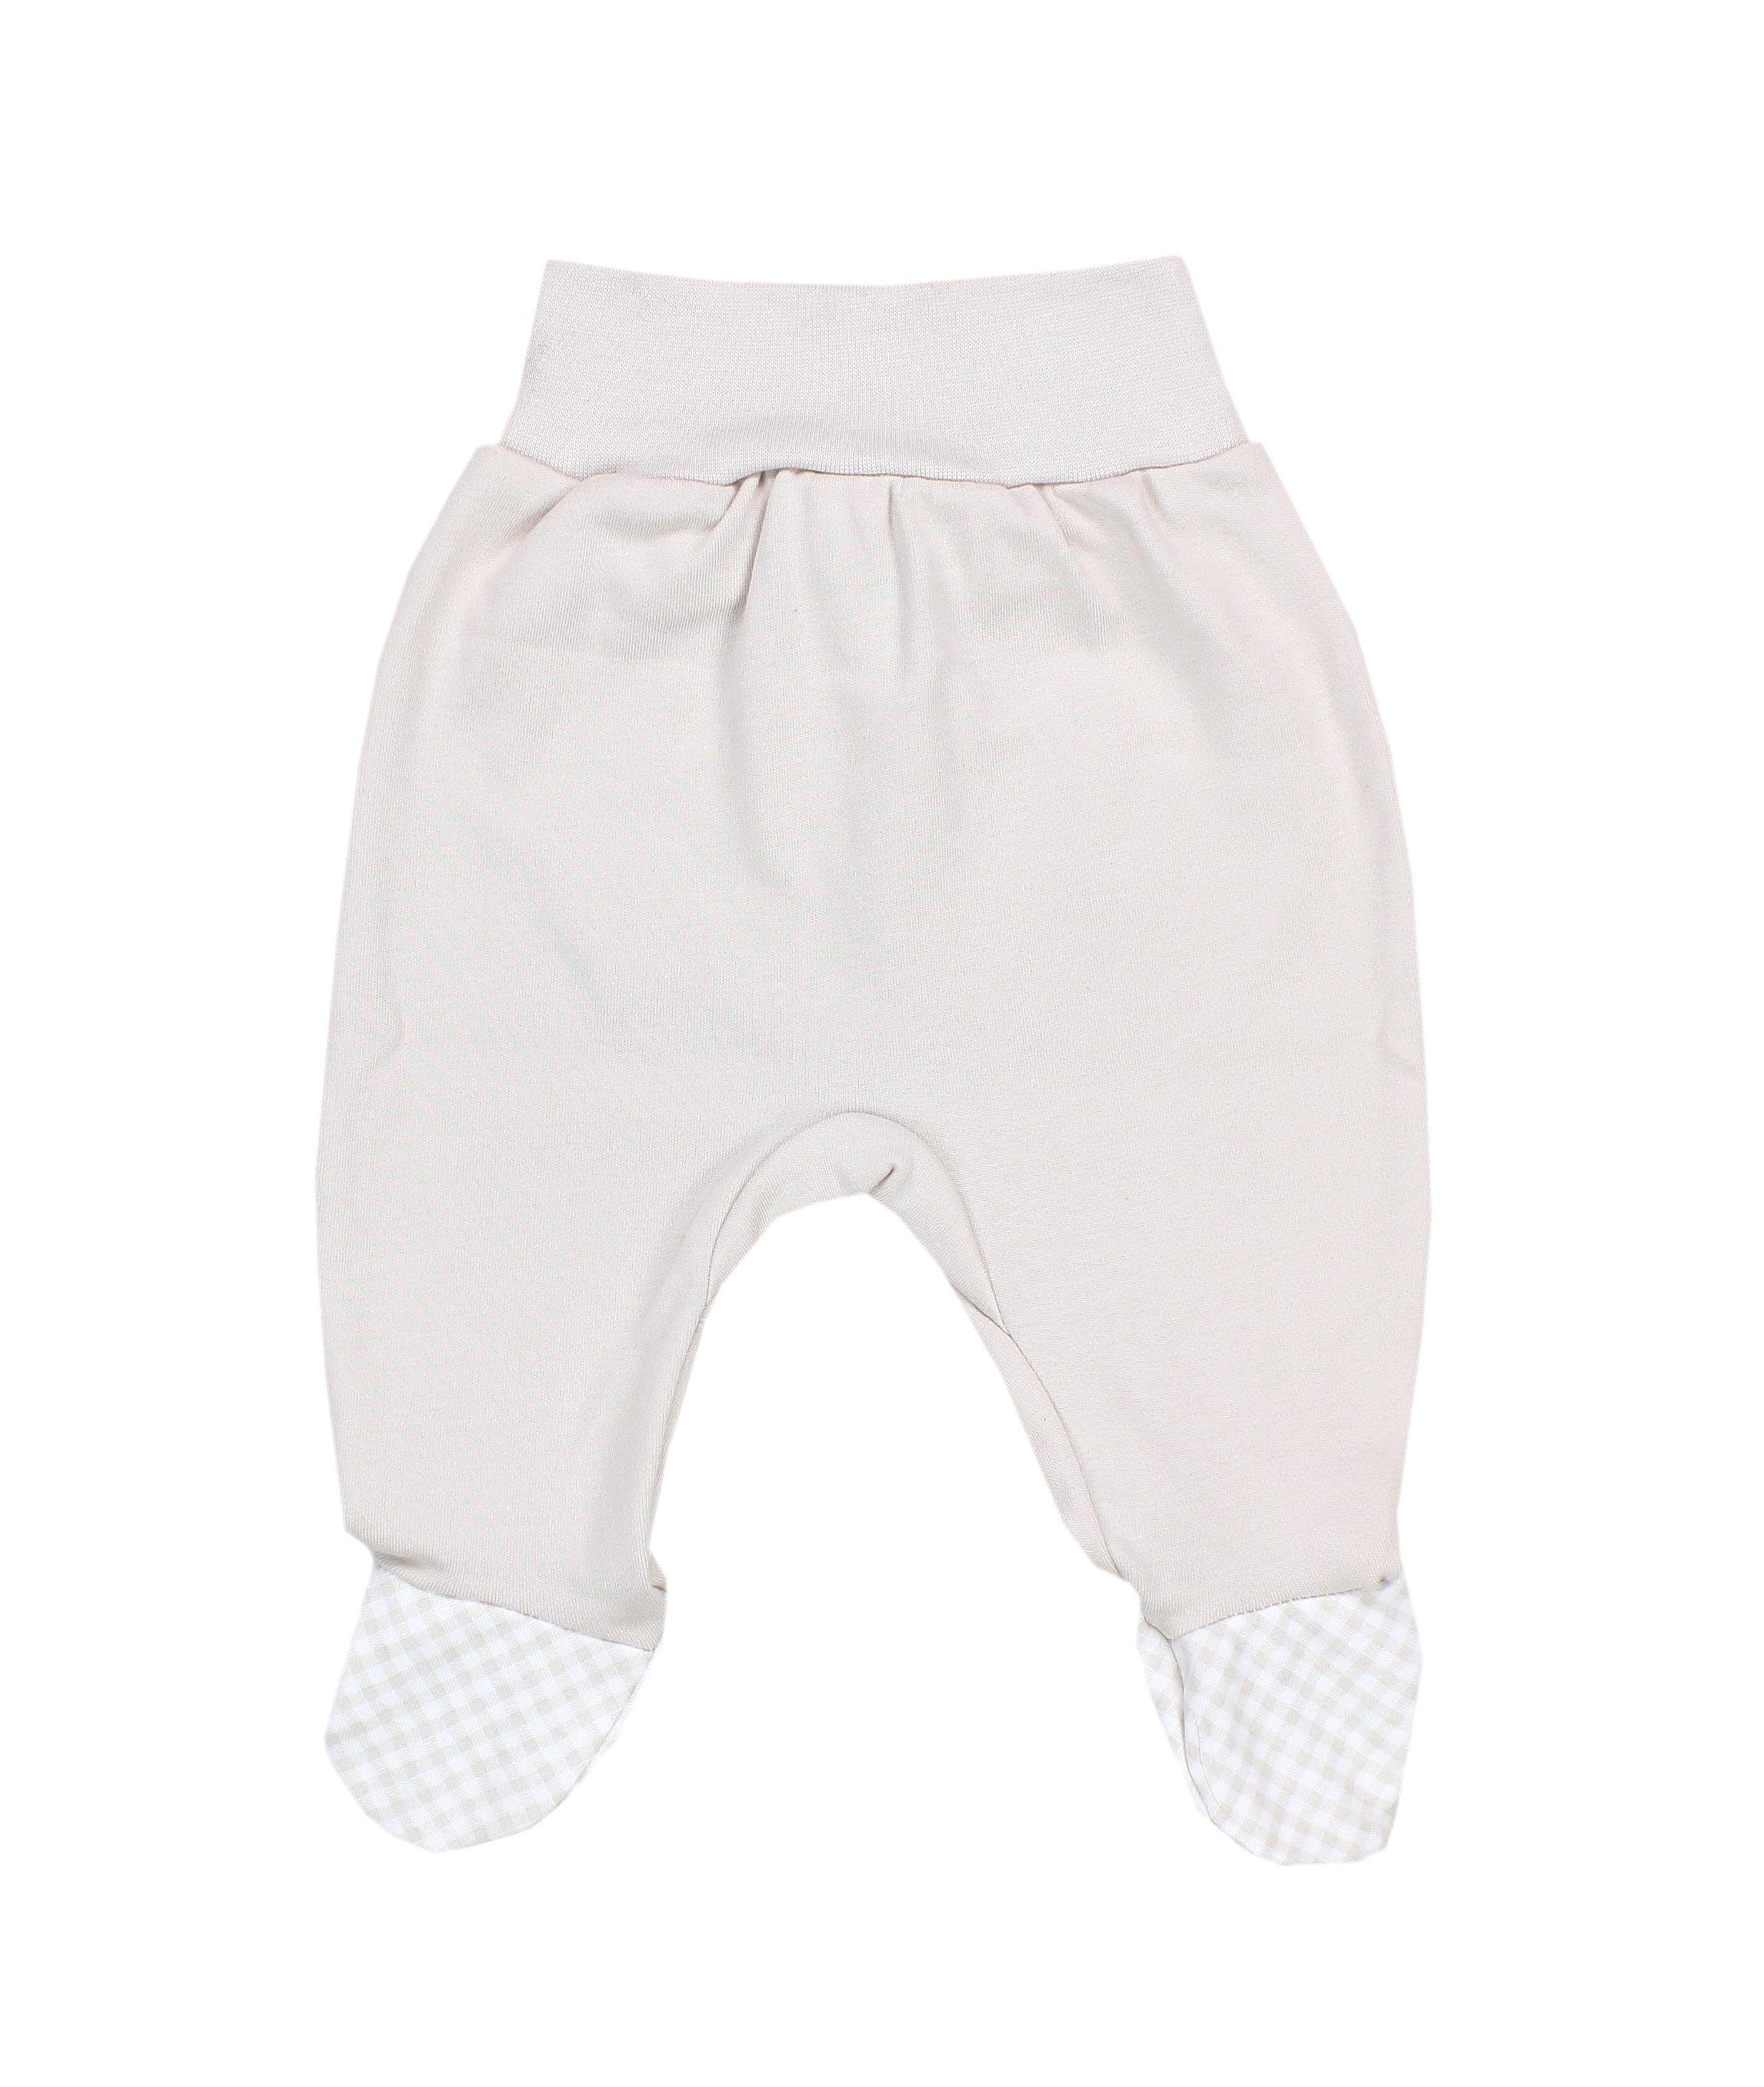 Baby Strampelhose TupTam Bekleidungsset / Erstausstattungspaket Set Mütze Bär Kleidung Beige Body